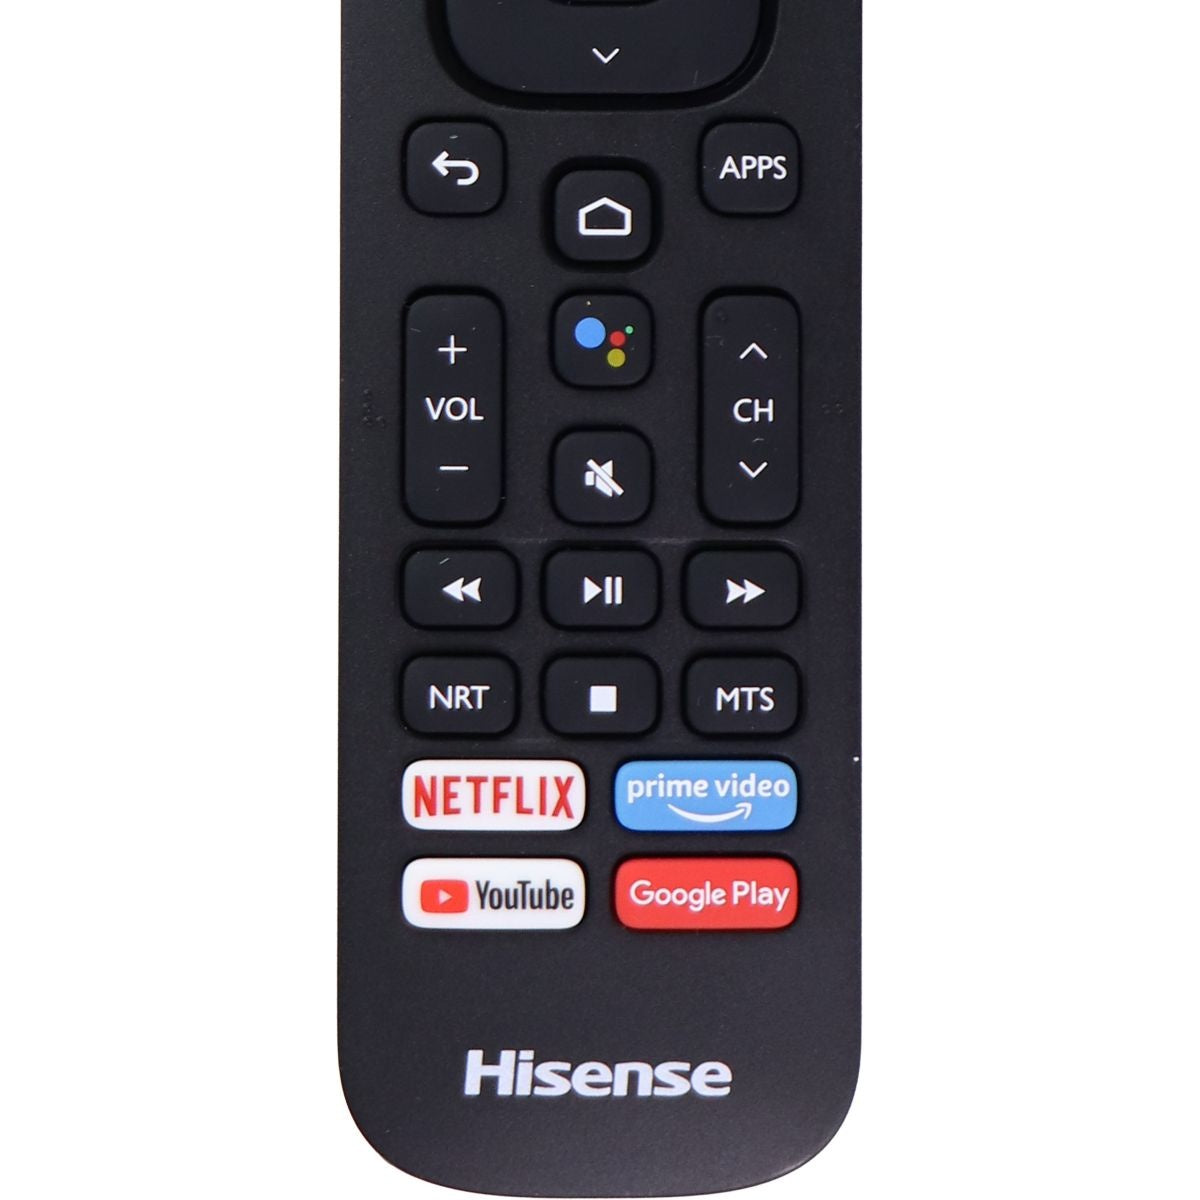 Hisense Remote Control (ERF2K60H) for Select Hisense LED TV - Black